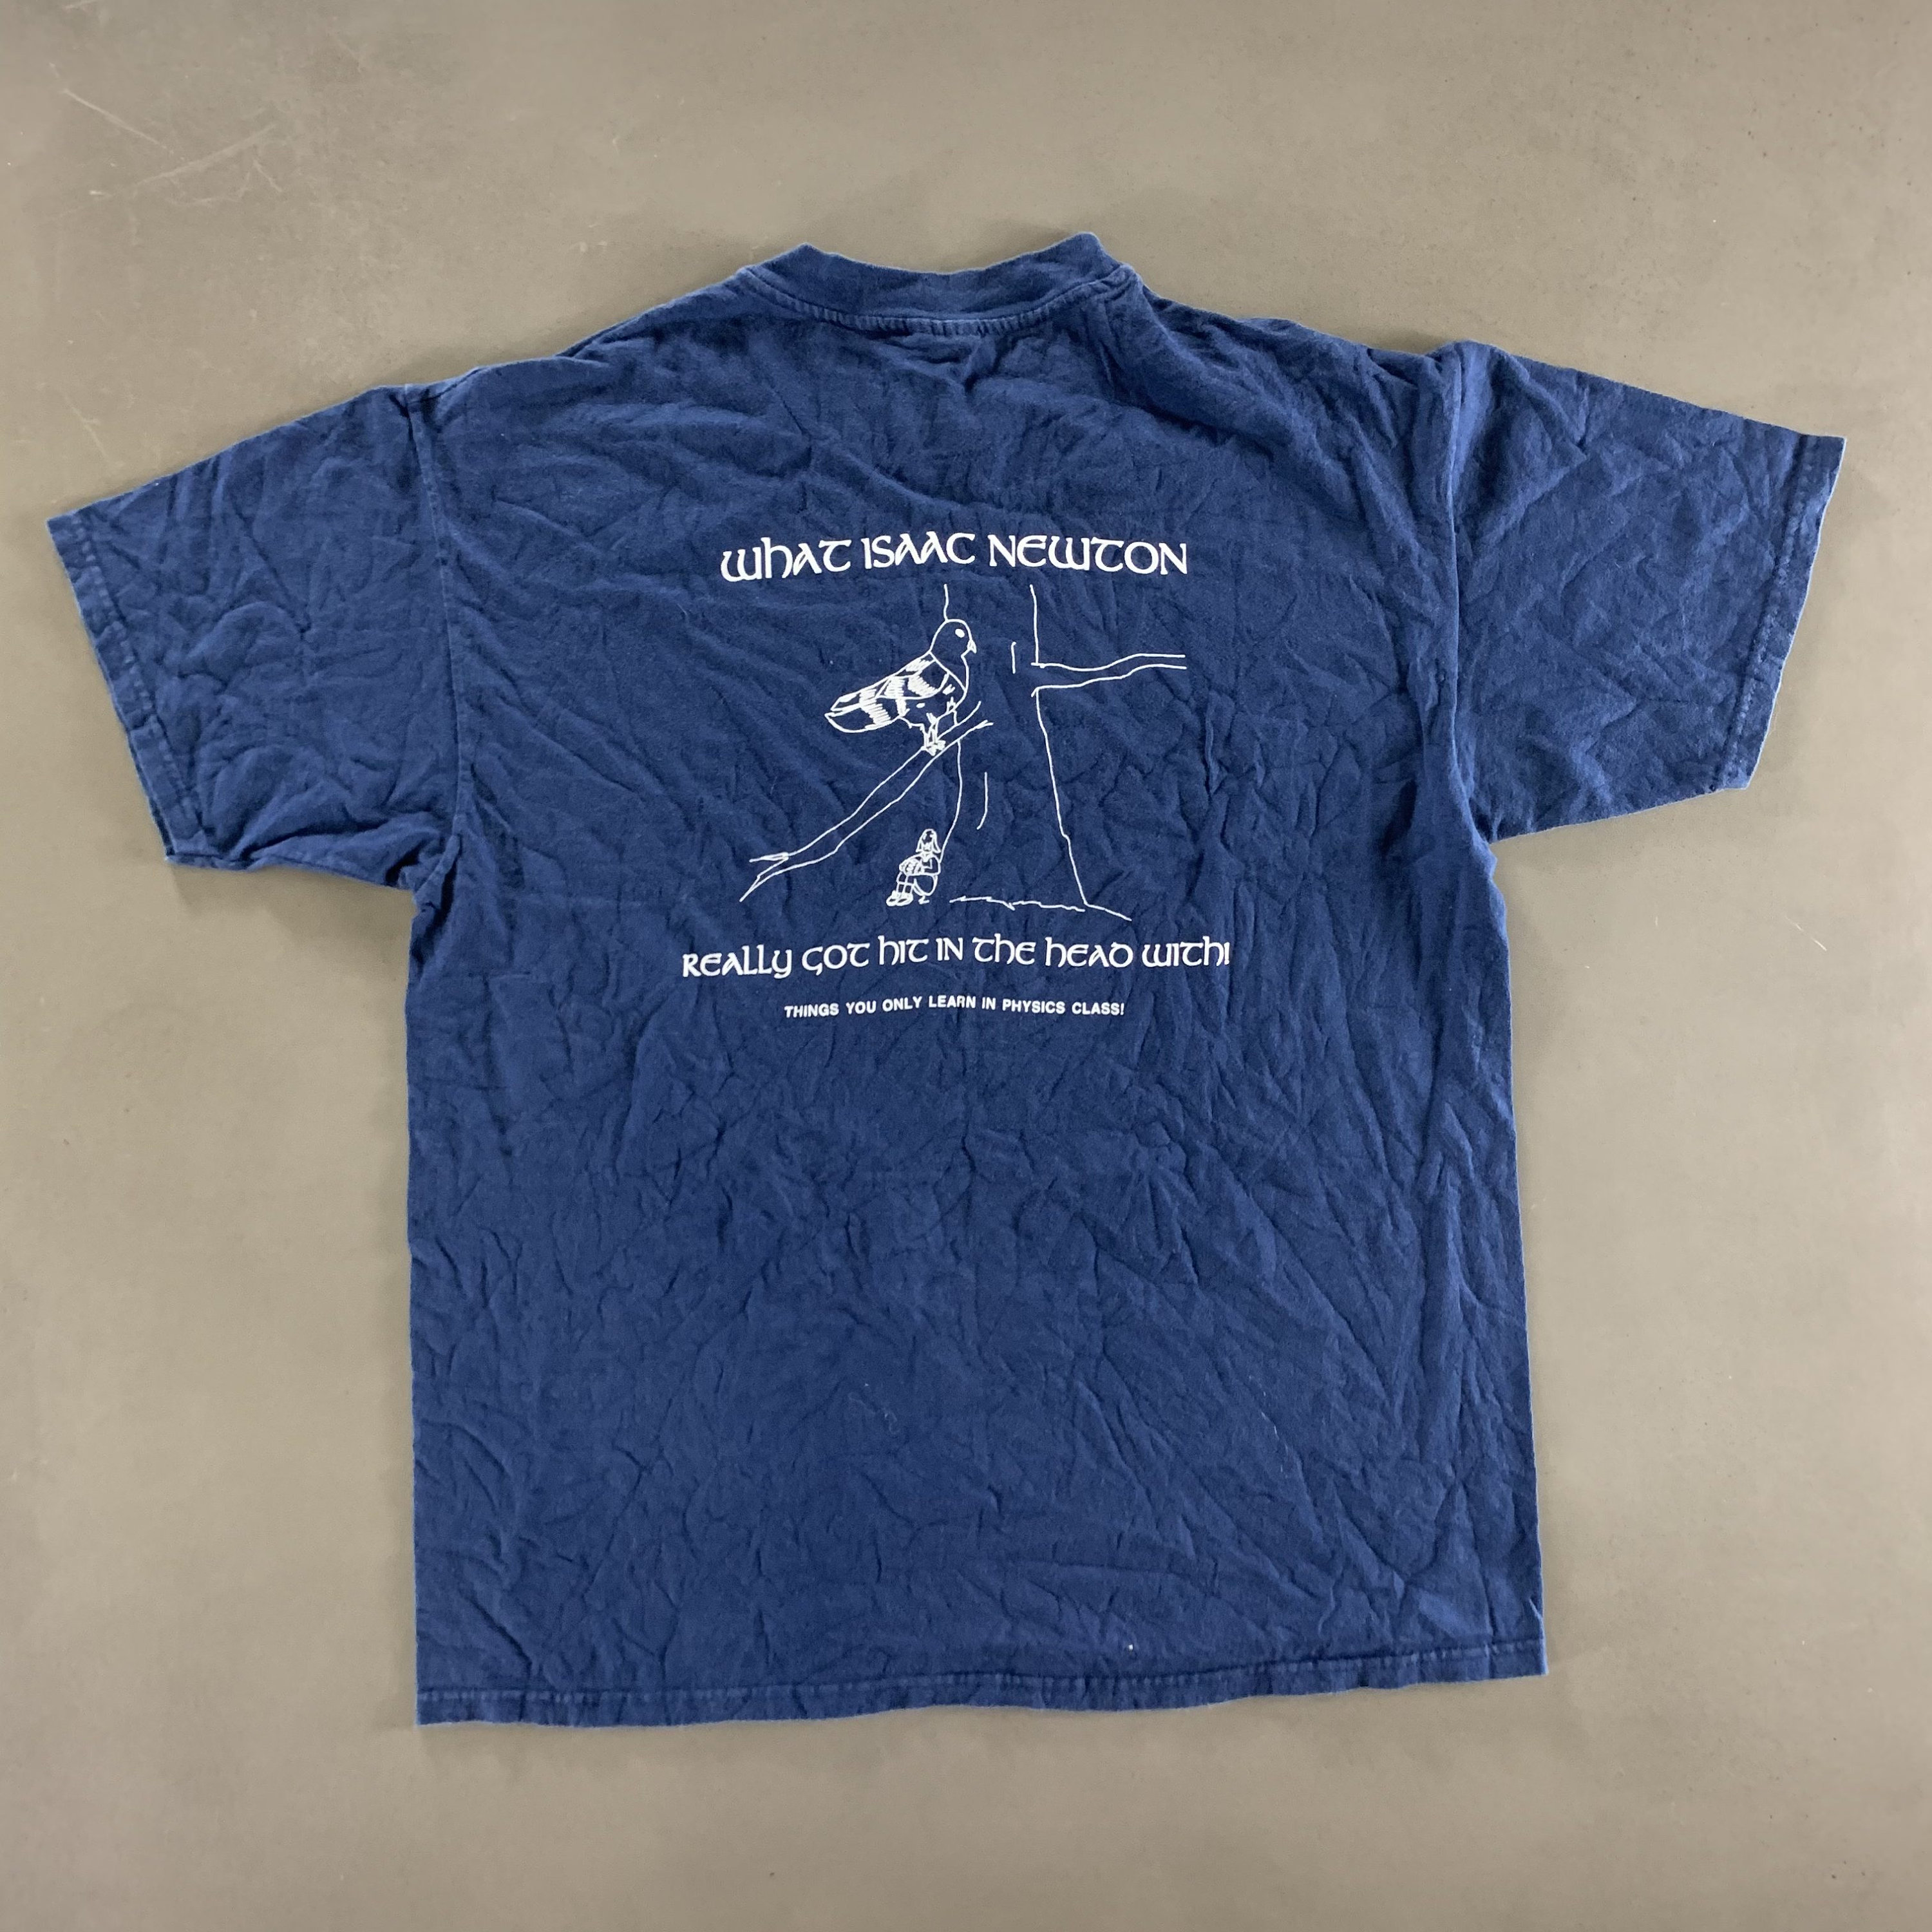 Vintage 1990s Physics T-shirt size XL | Etsy